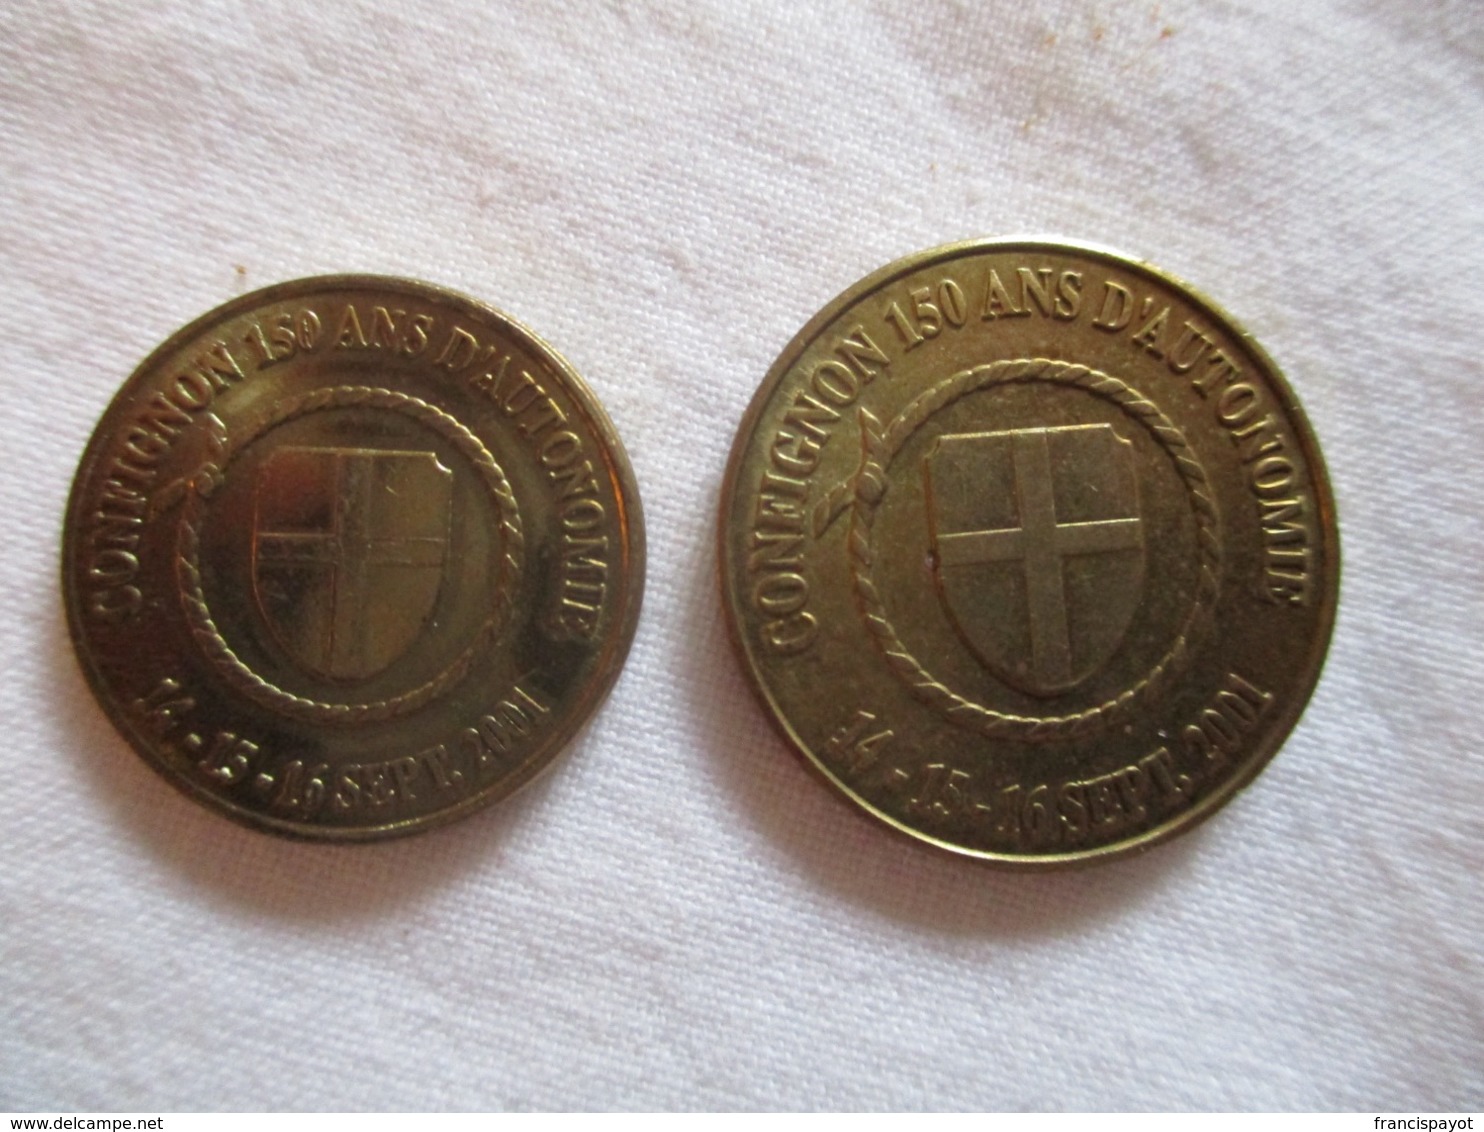 Suisse: Jetons De Confignon 150 Ans D''autonomie - 1, 2, 5 & 10 Vuillonnex 2001 - Monedas / De Necesidad